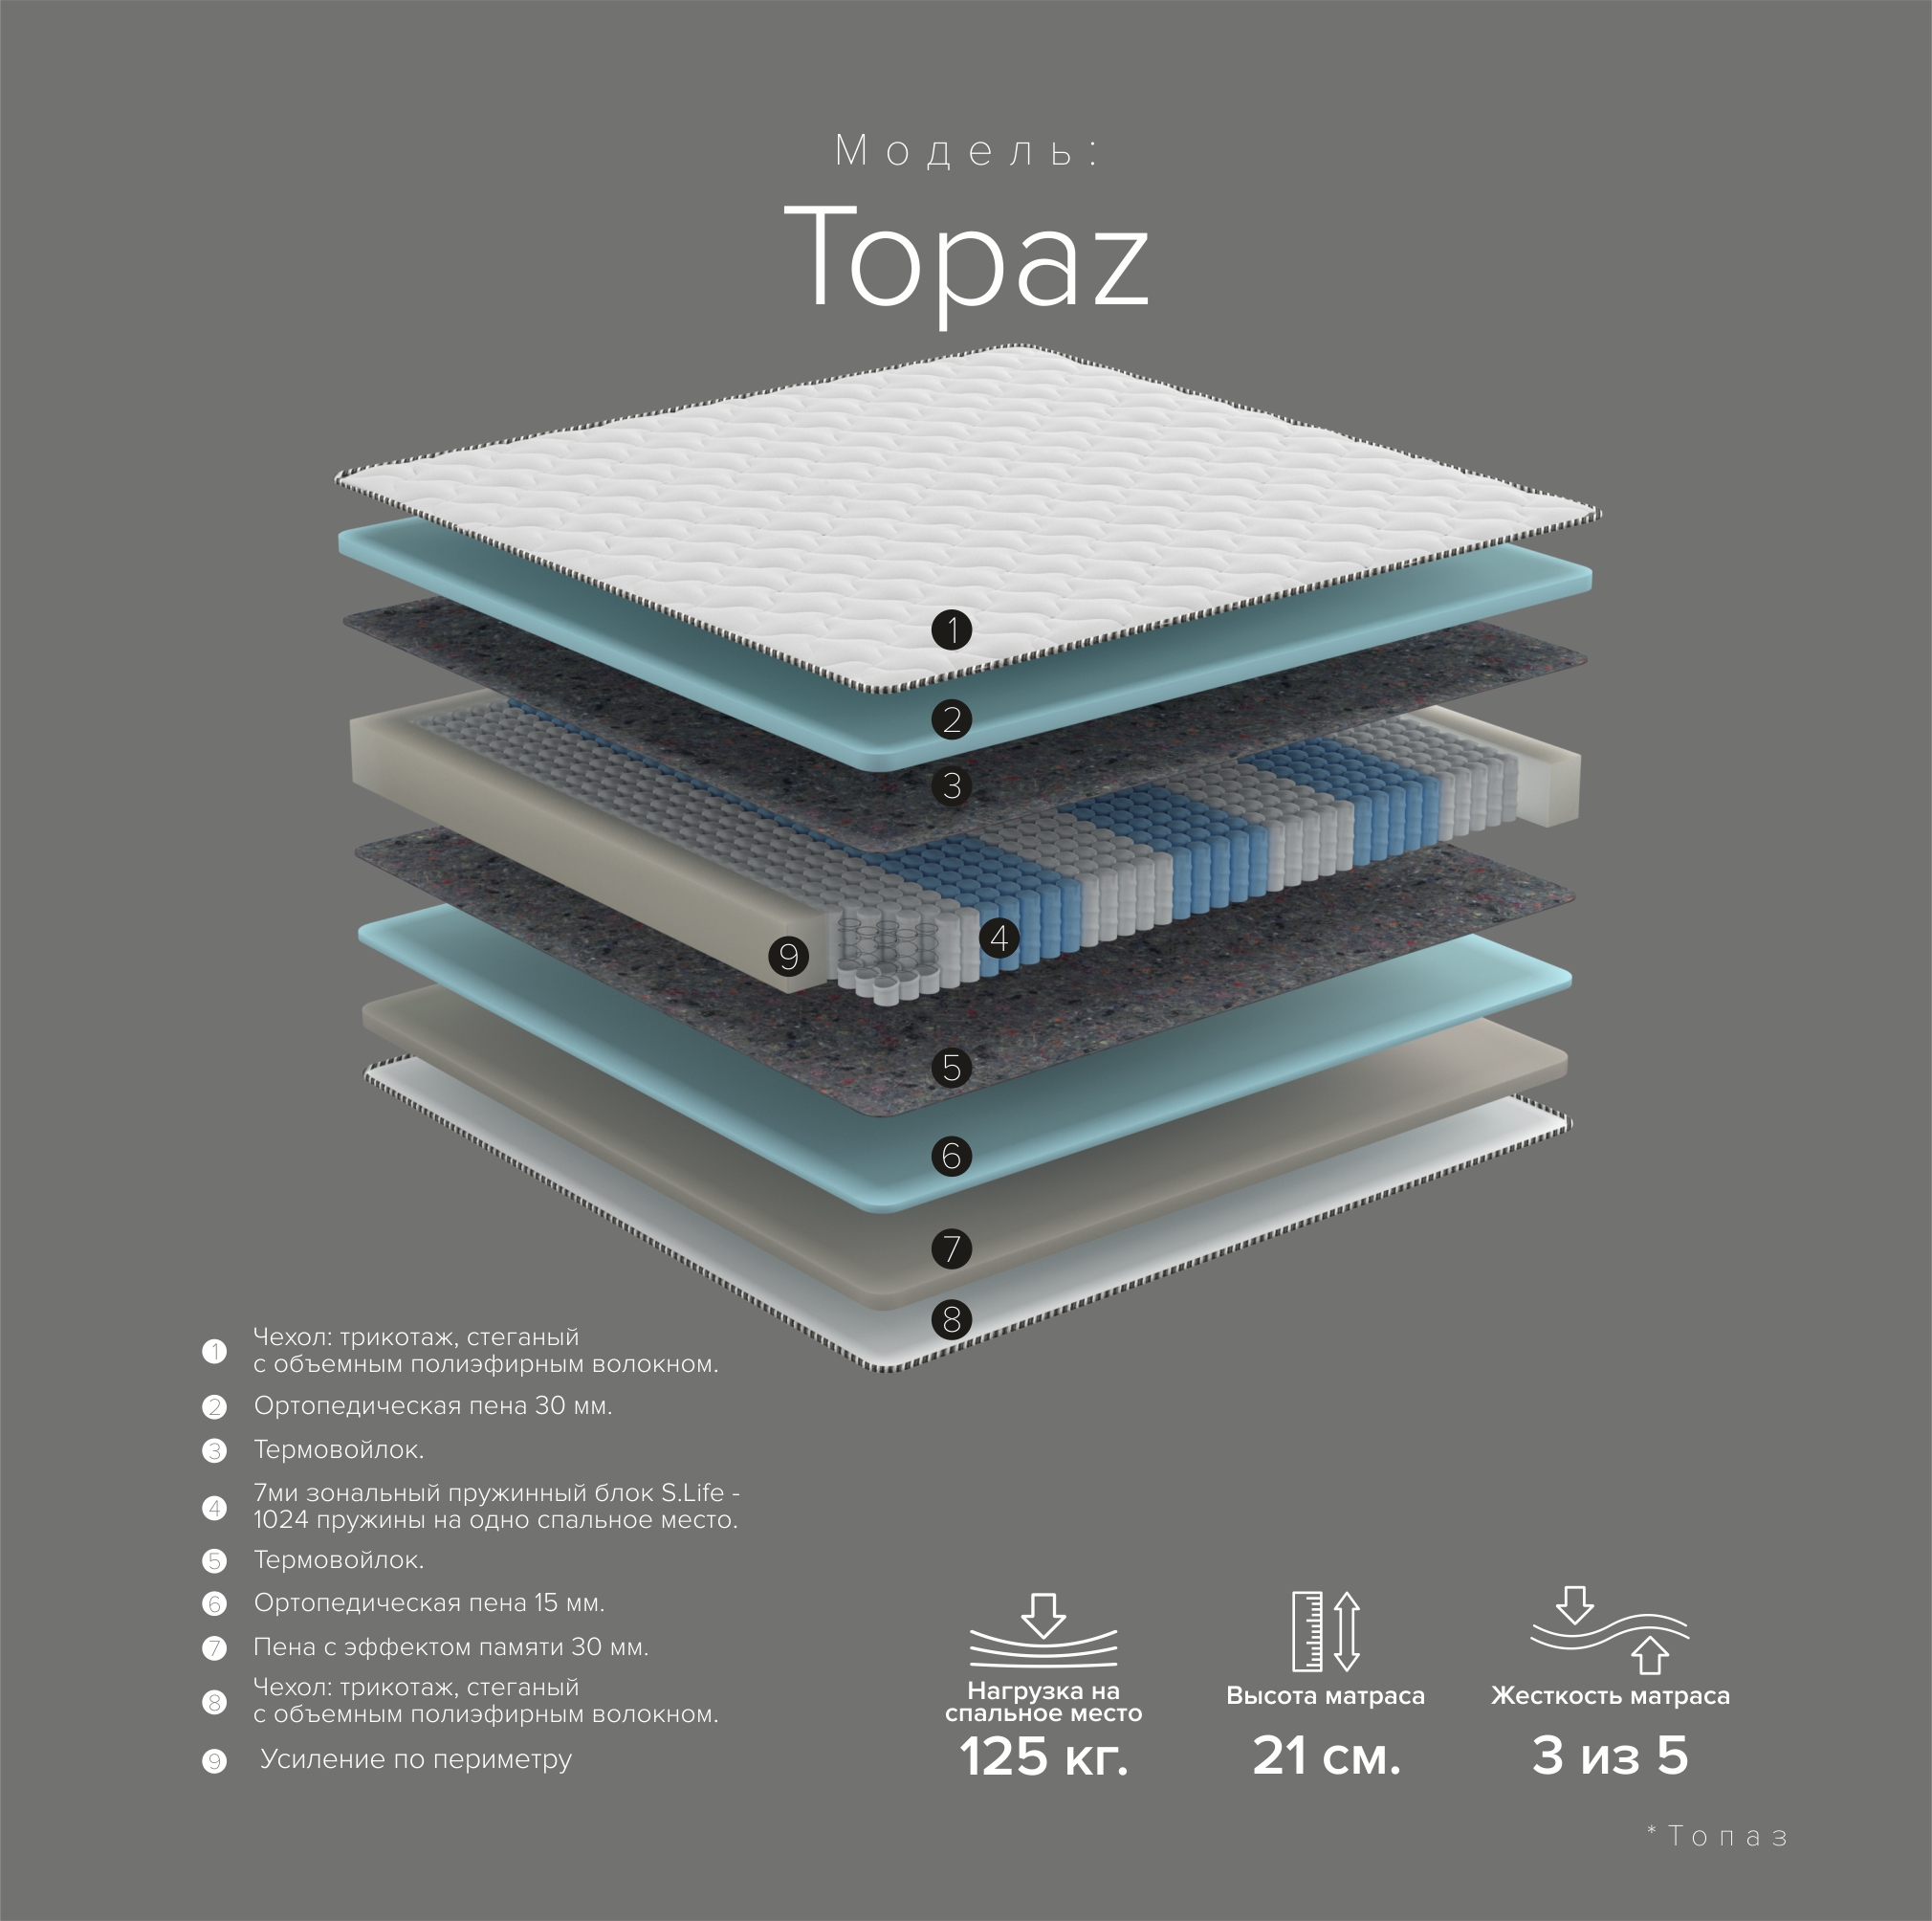 Topaz new 24 com